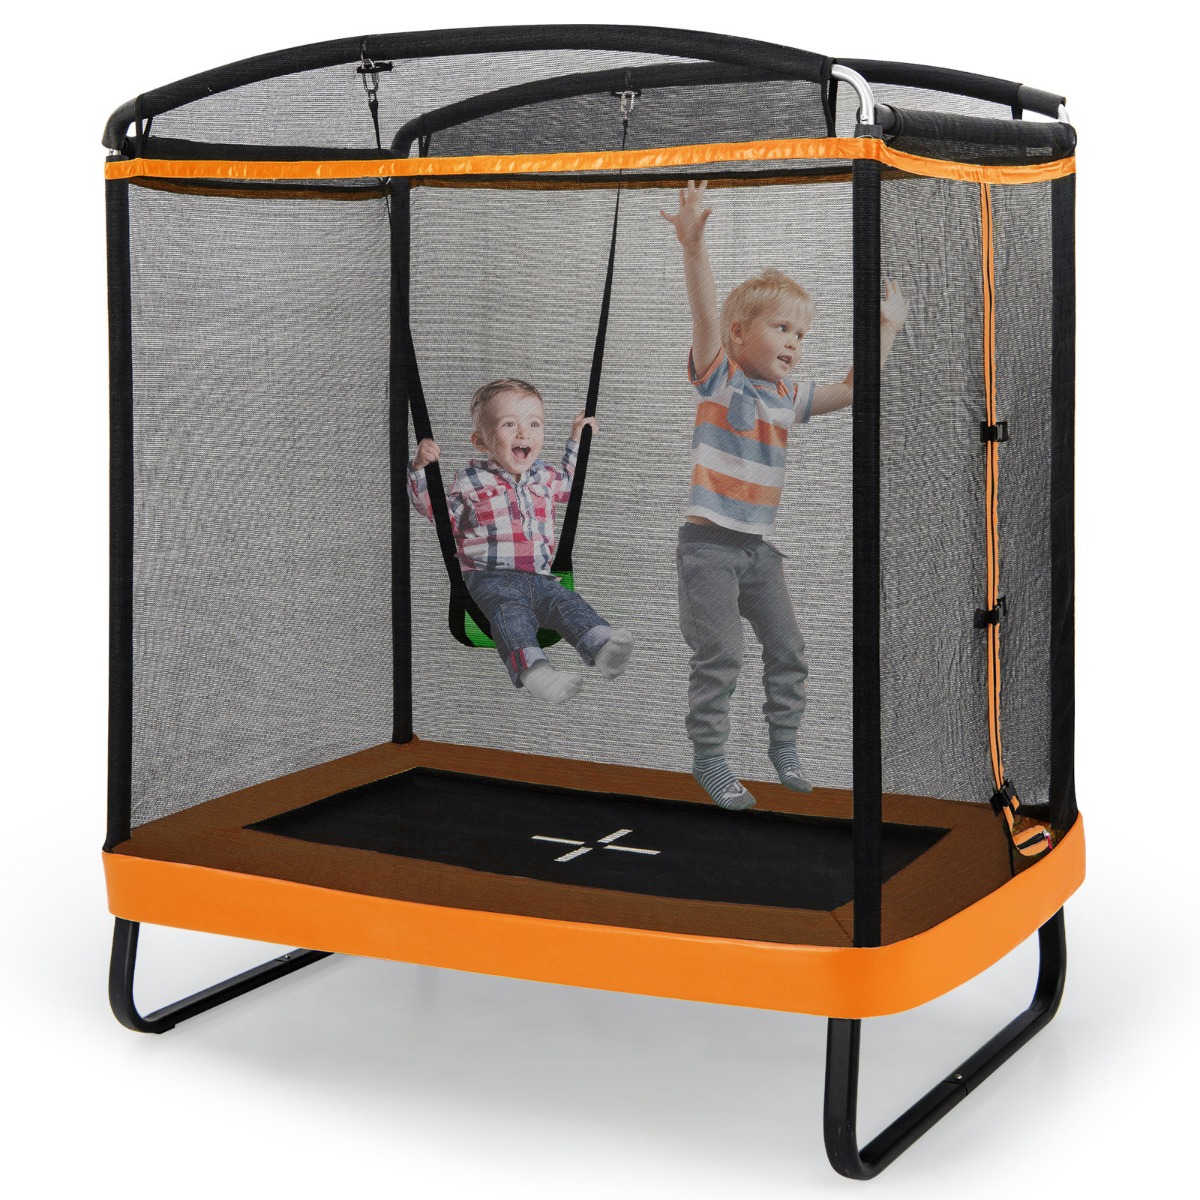 Costway Trampolino rettangolare per bambini con altalena rete di sicurezza, Trampolino elastico da esterno da 190cm Arancione